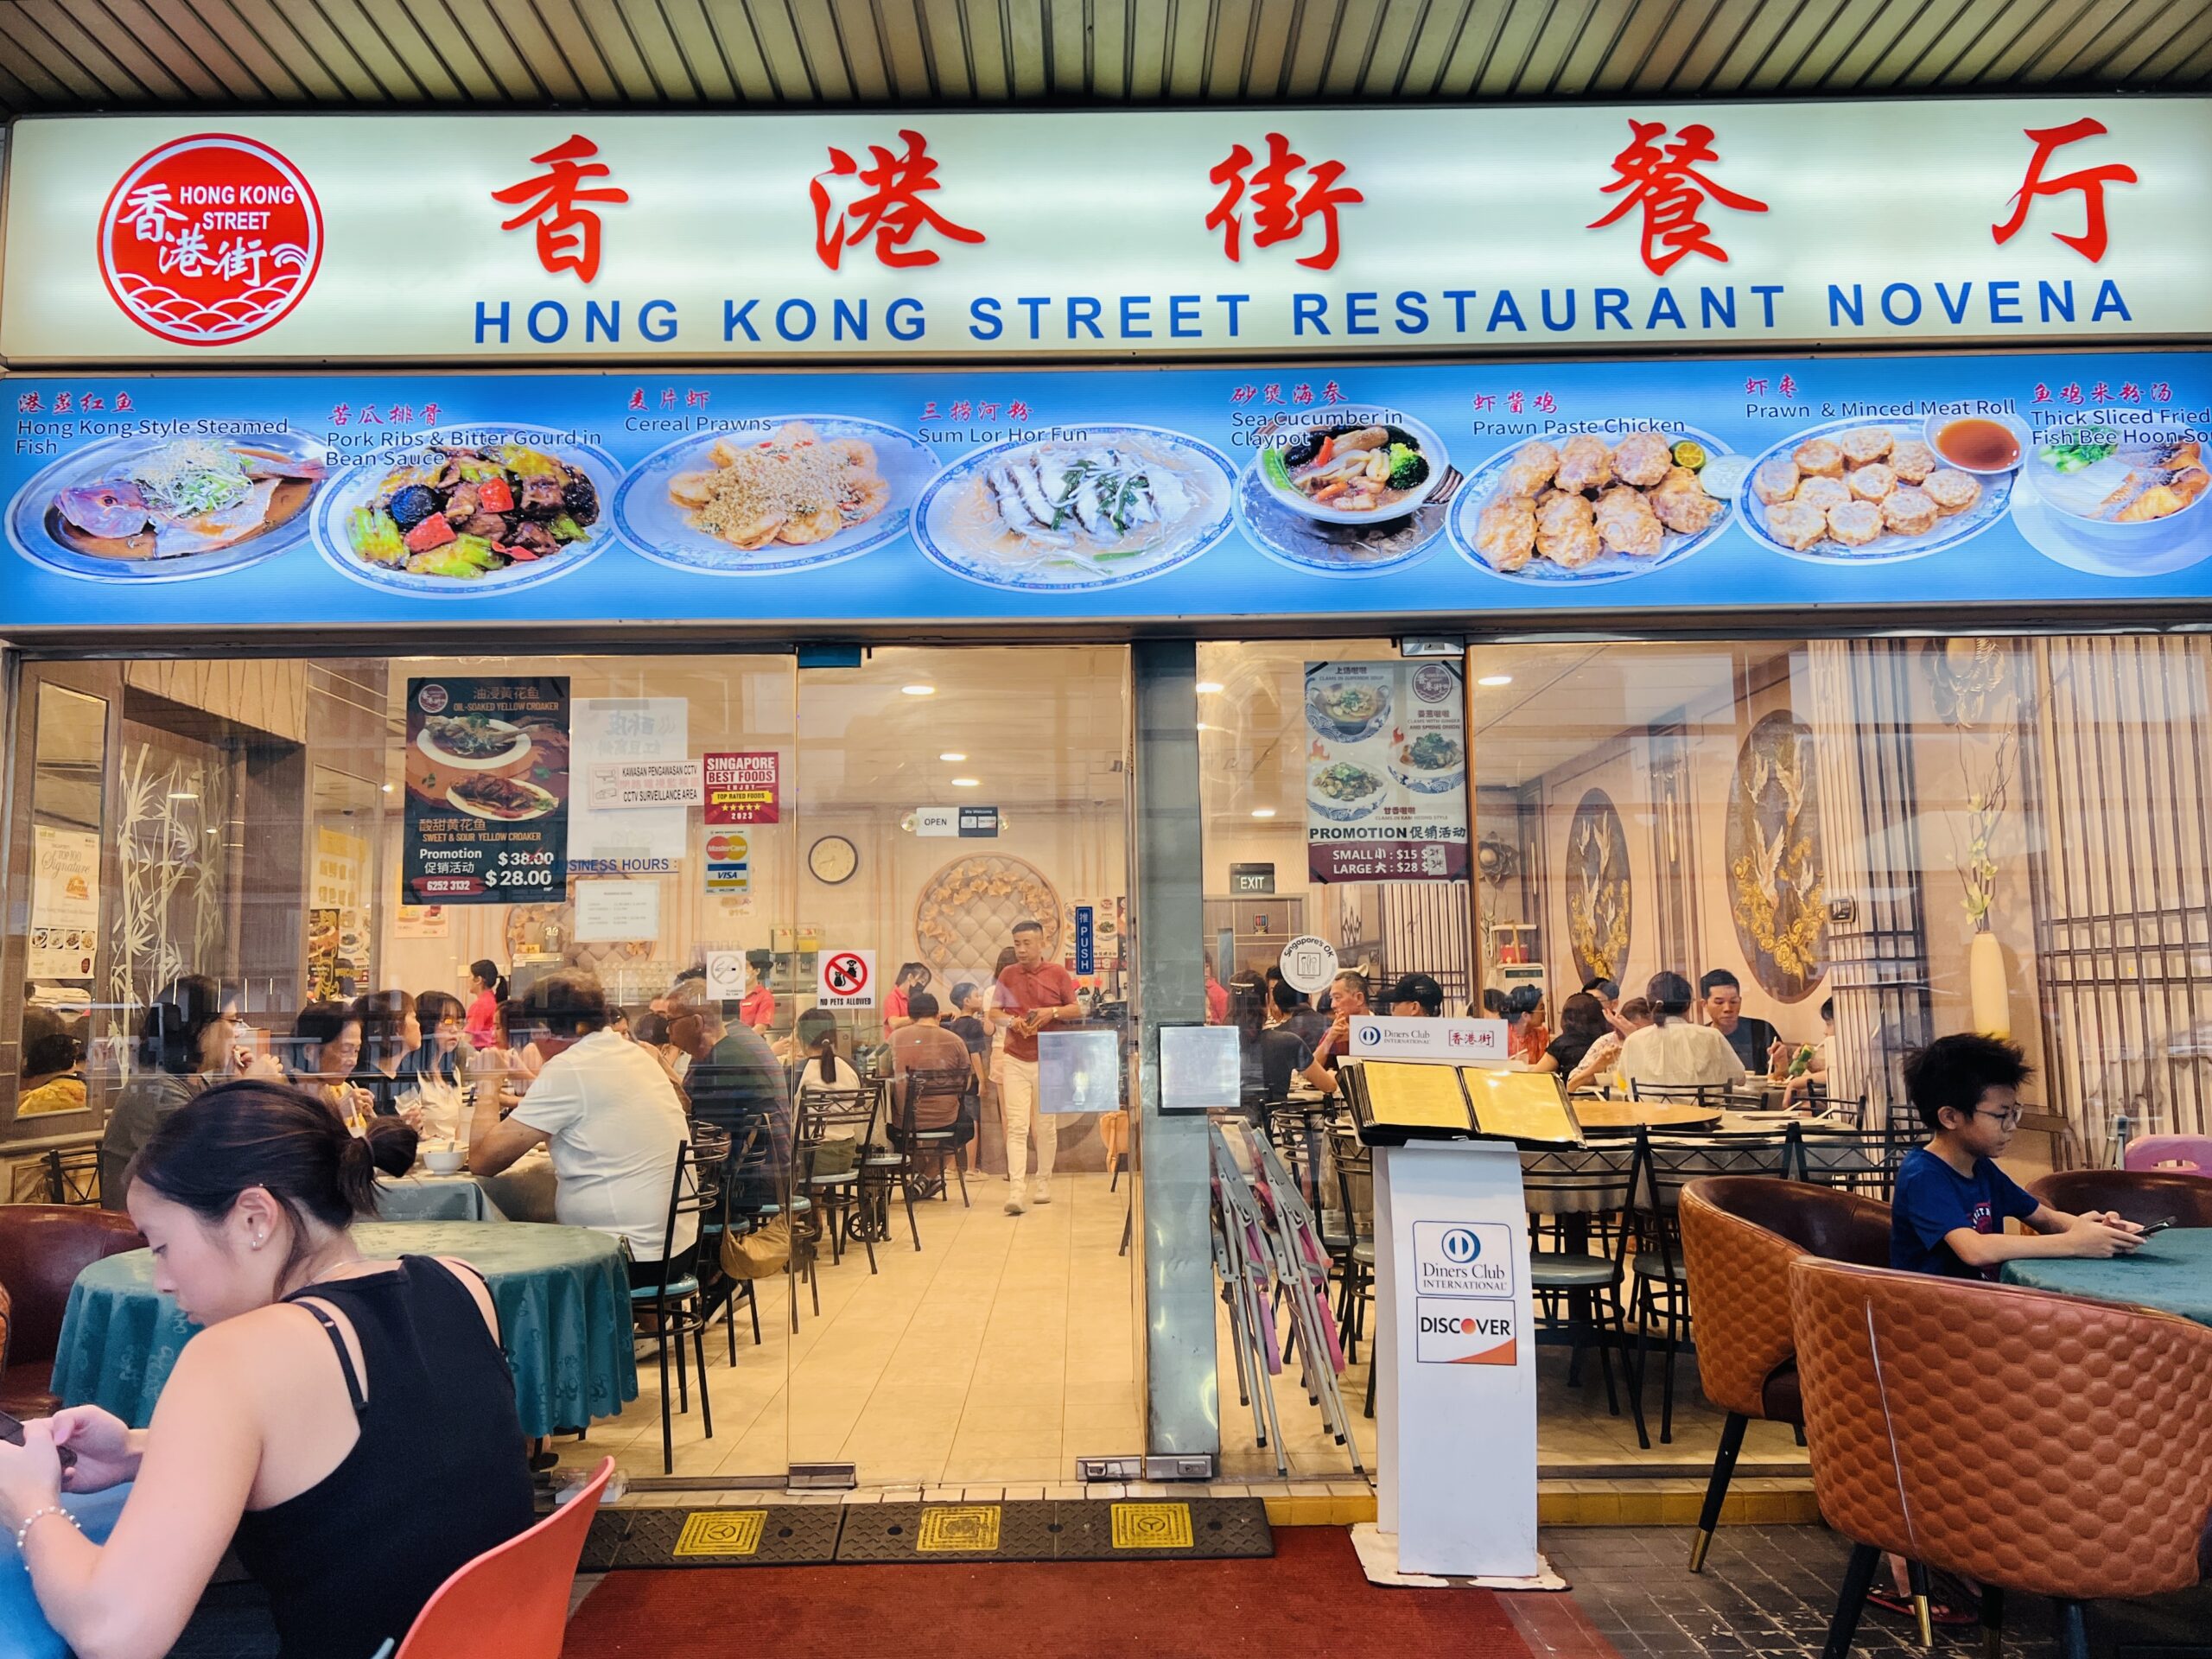 Hong Kong Street Restaurant Novena - Restaurant